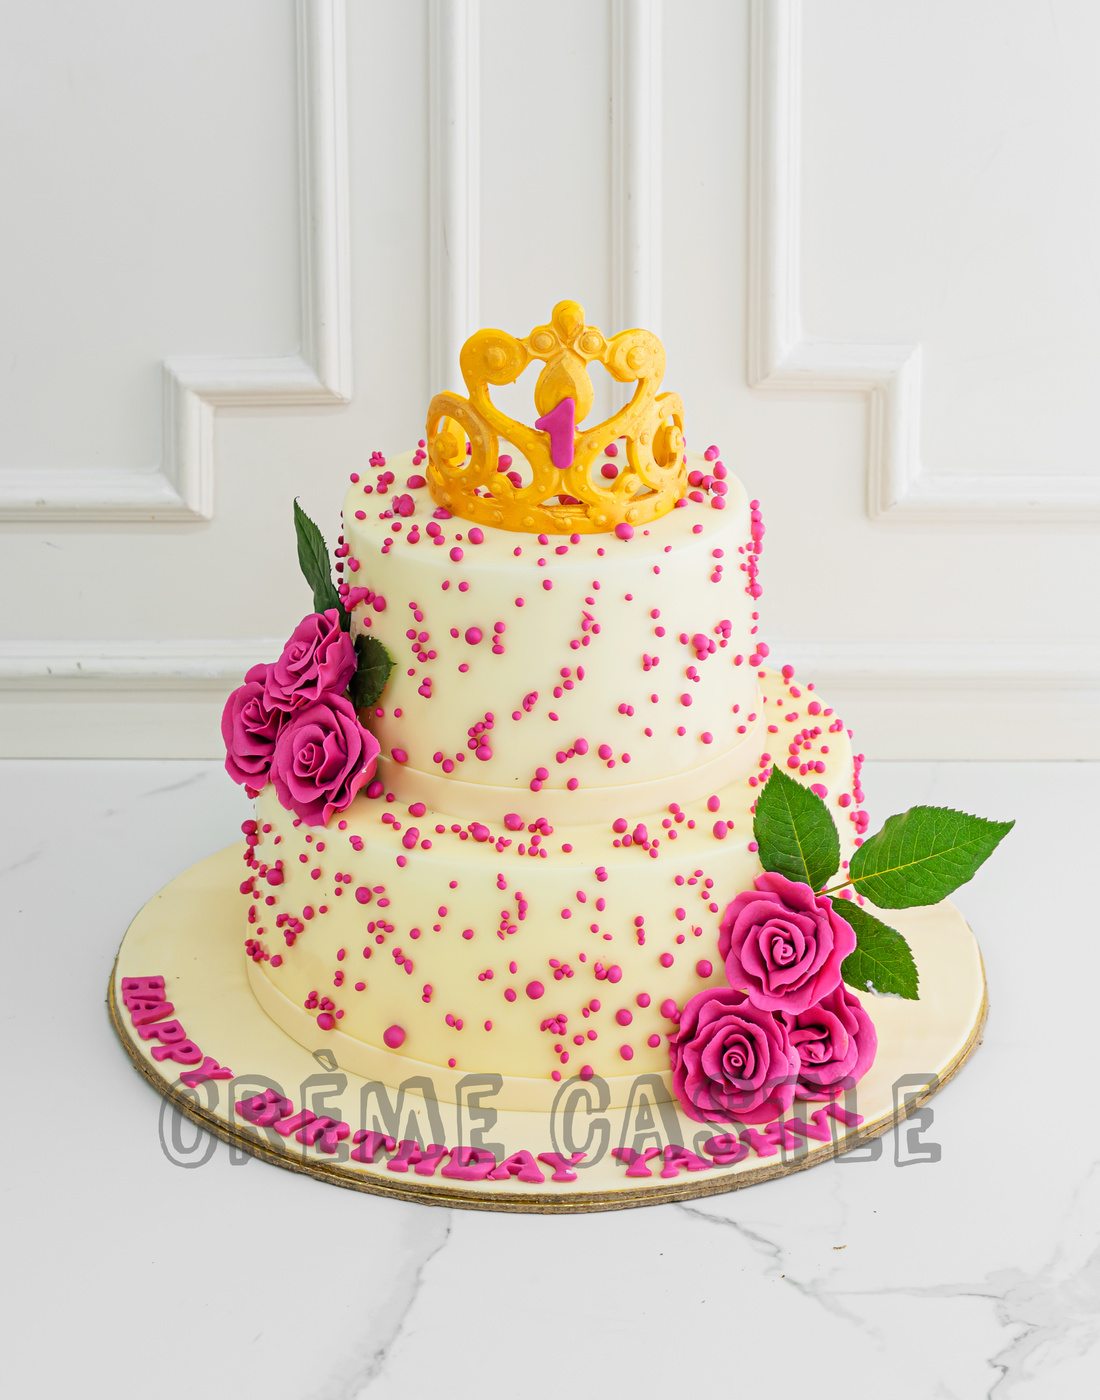 Glitz & Glamour Wedding Cake - Part 2(Decorations) - CAKE STYLE - YouTube